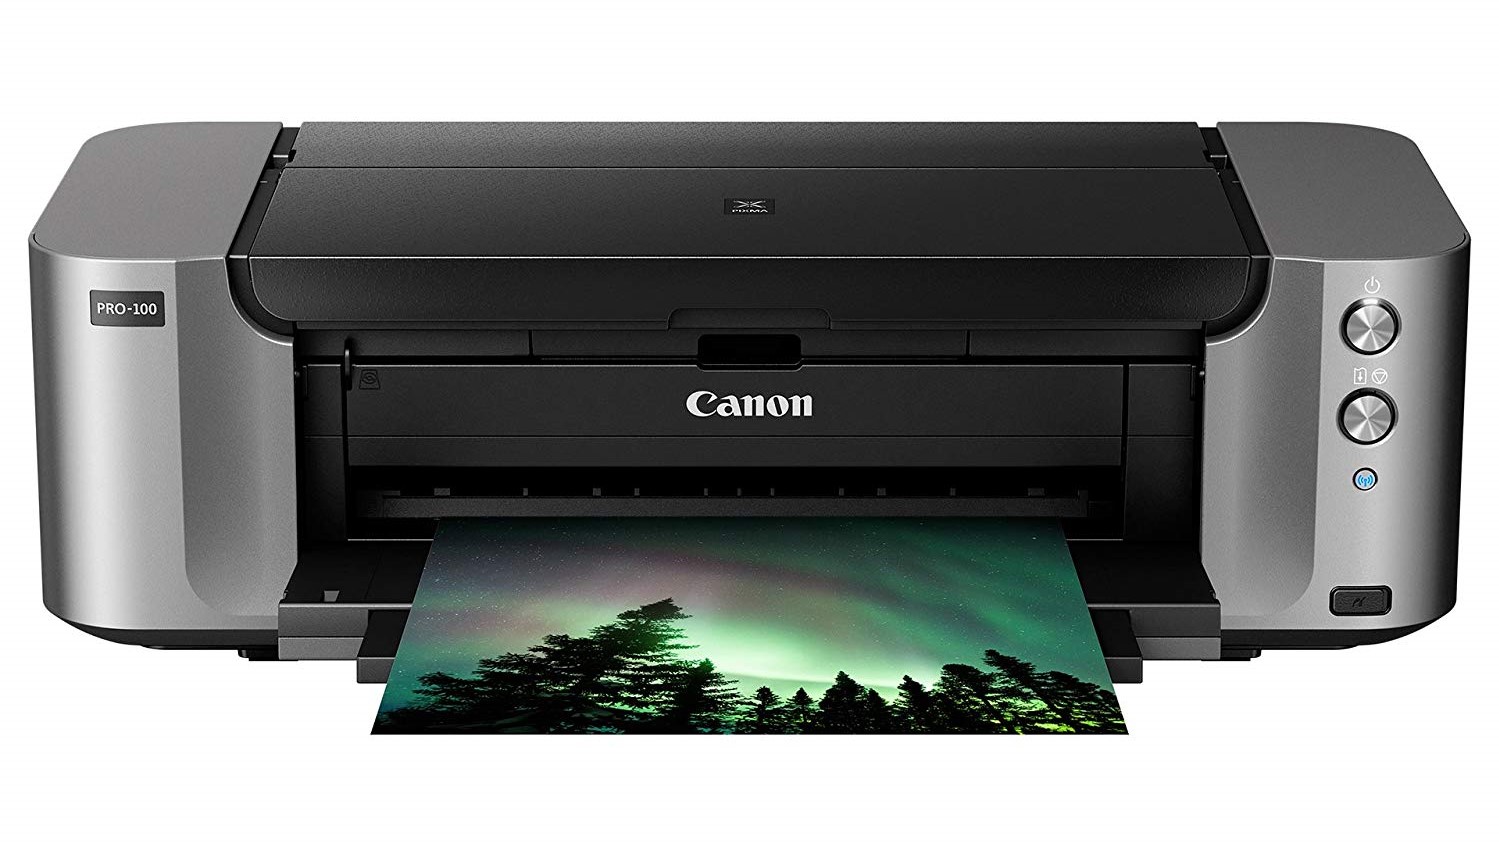 Canon Pixma Pro 100 photo printer